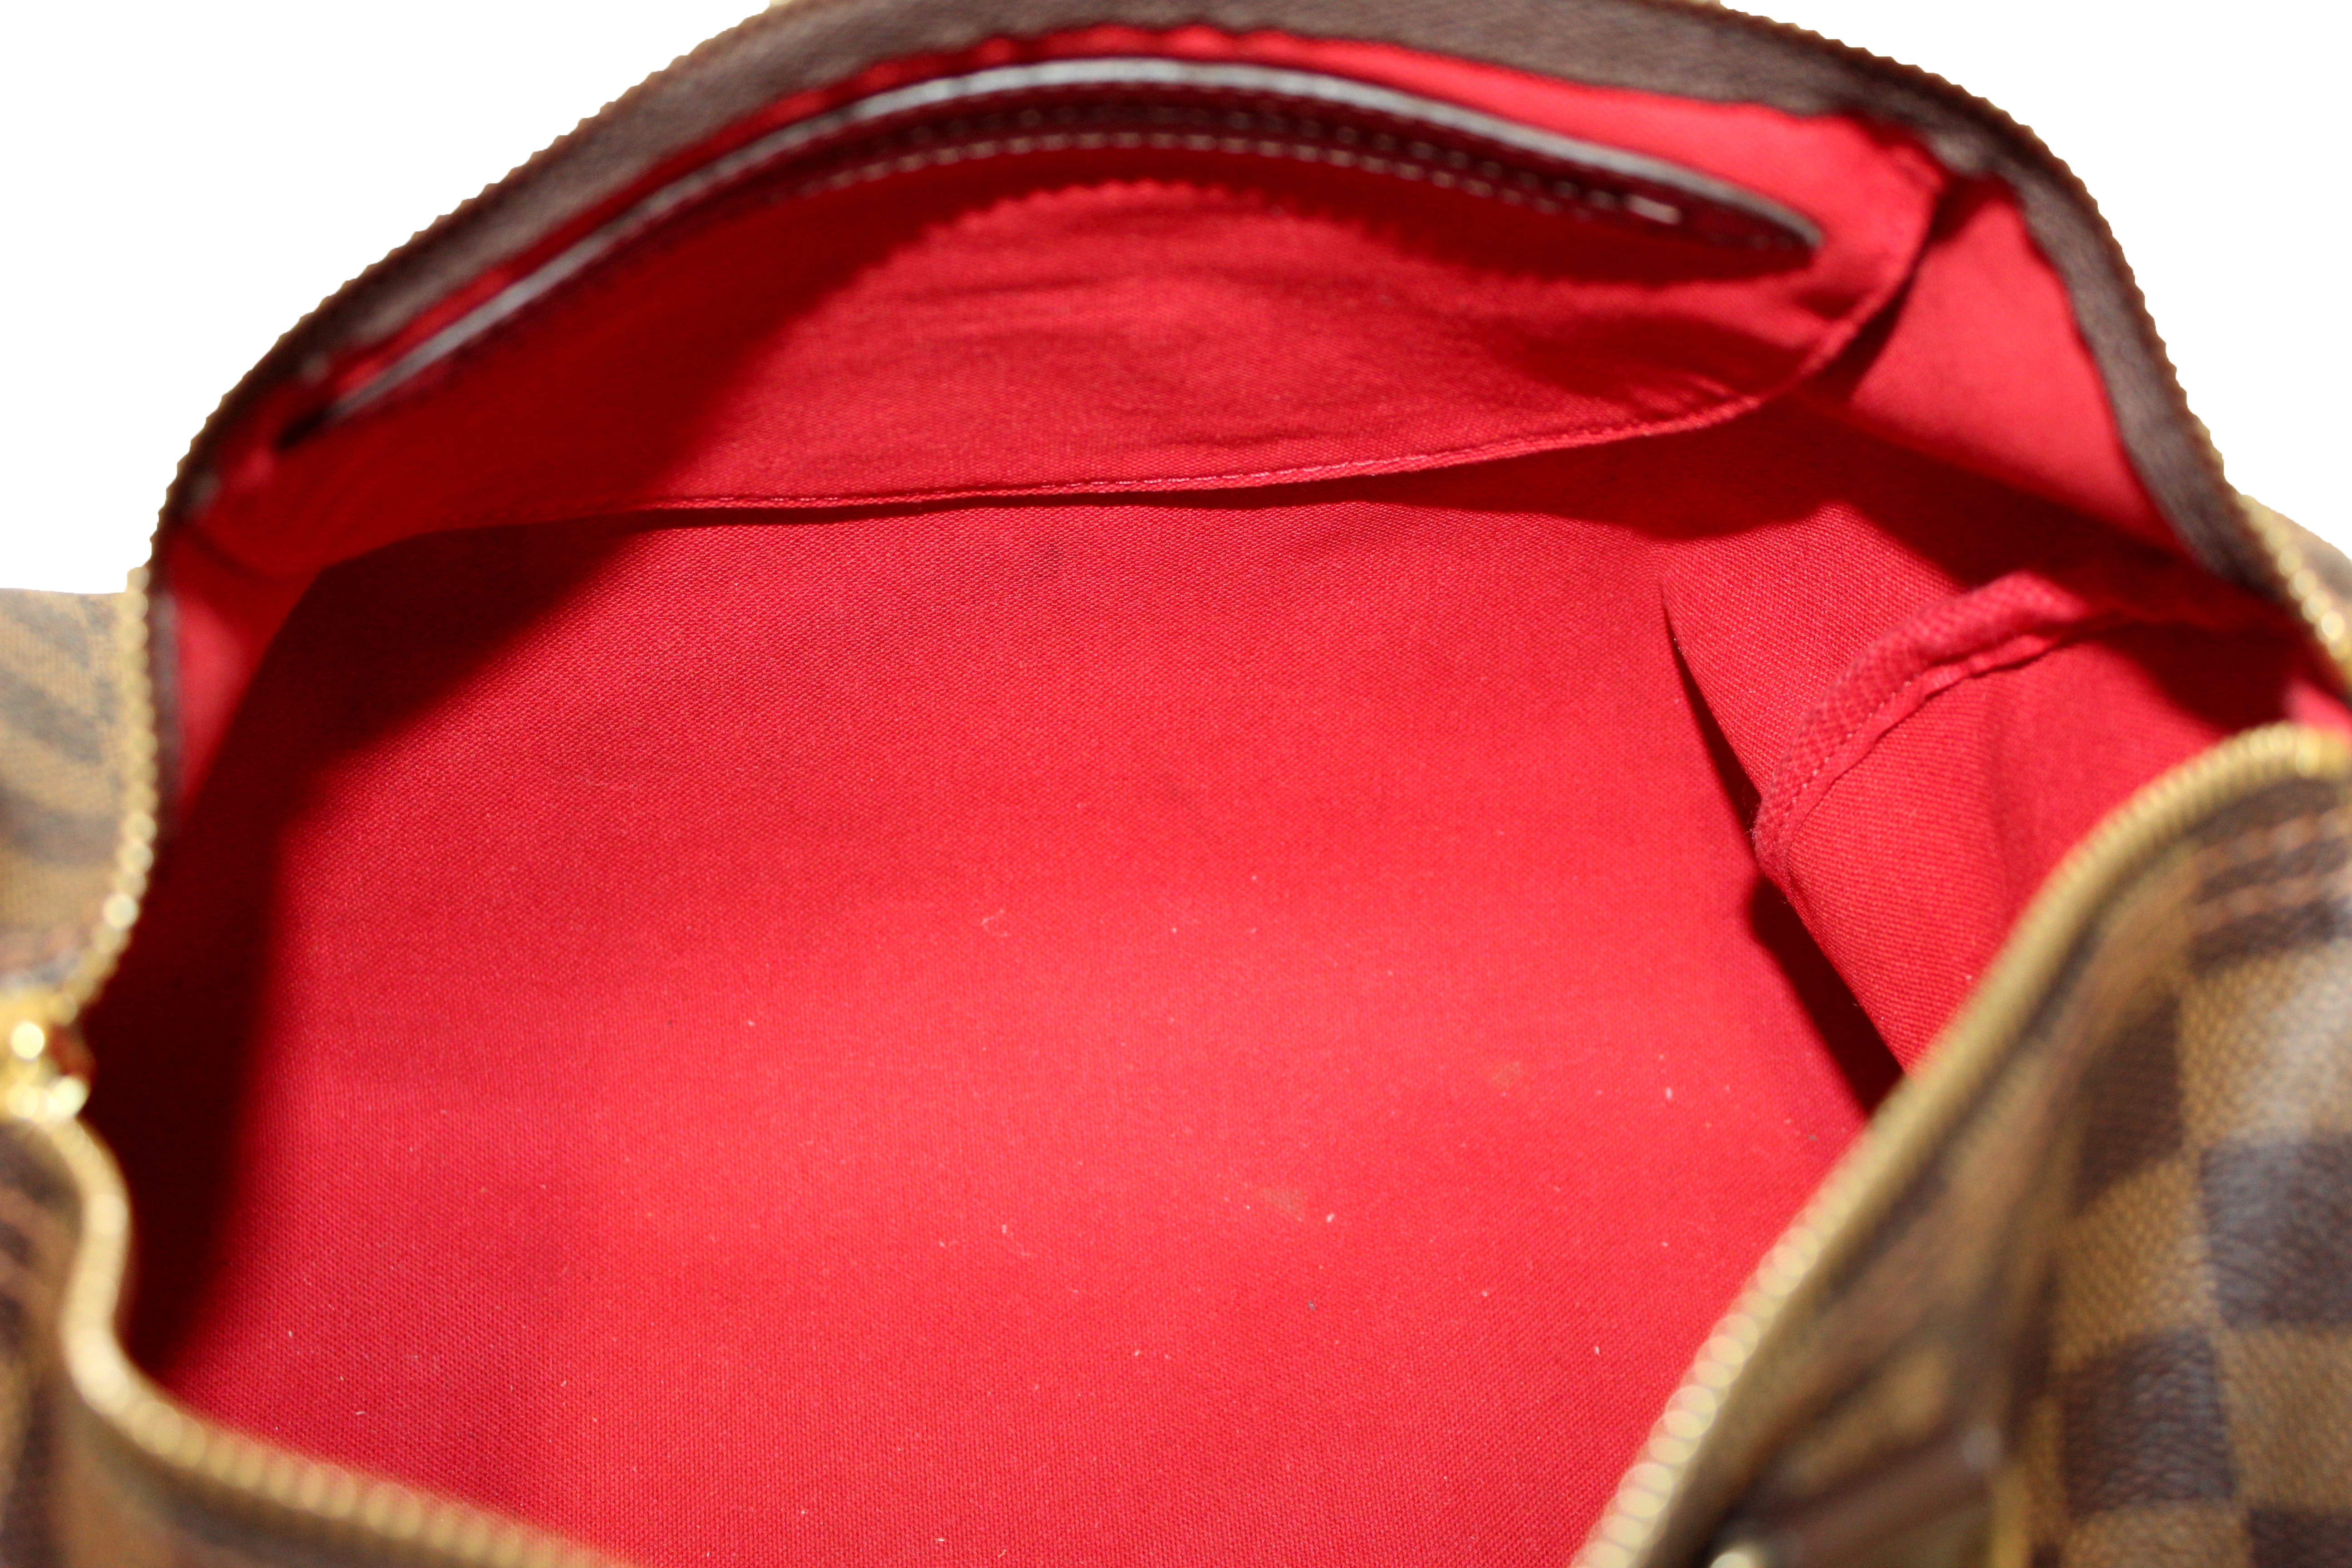 AUTHENTIC: Louis Vuitton Speedy 30 Bag , The zipper